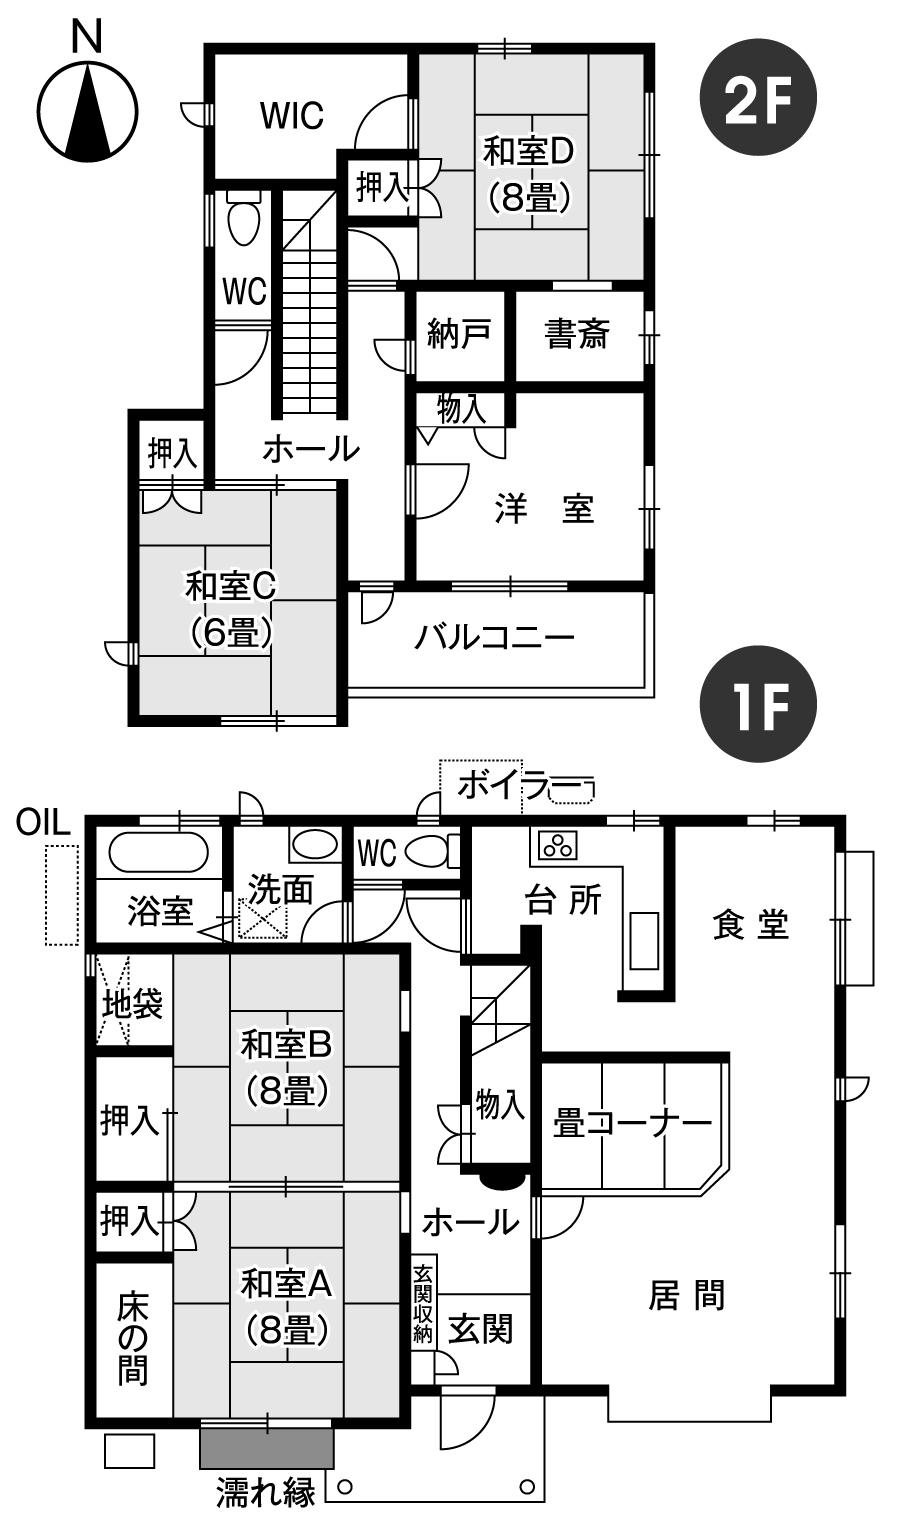 Floor plan. 31 million yen, 5LDK, Land area 244.23 sq m , Building area 158.5 sq m